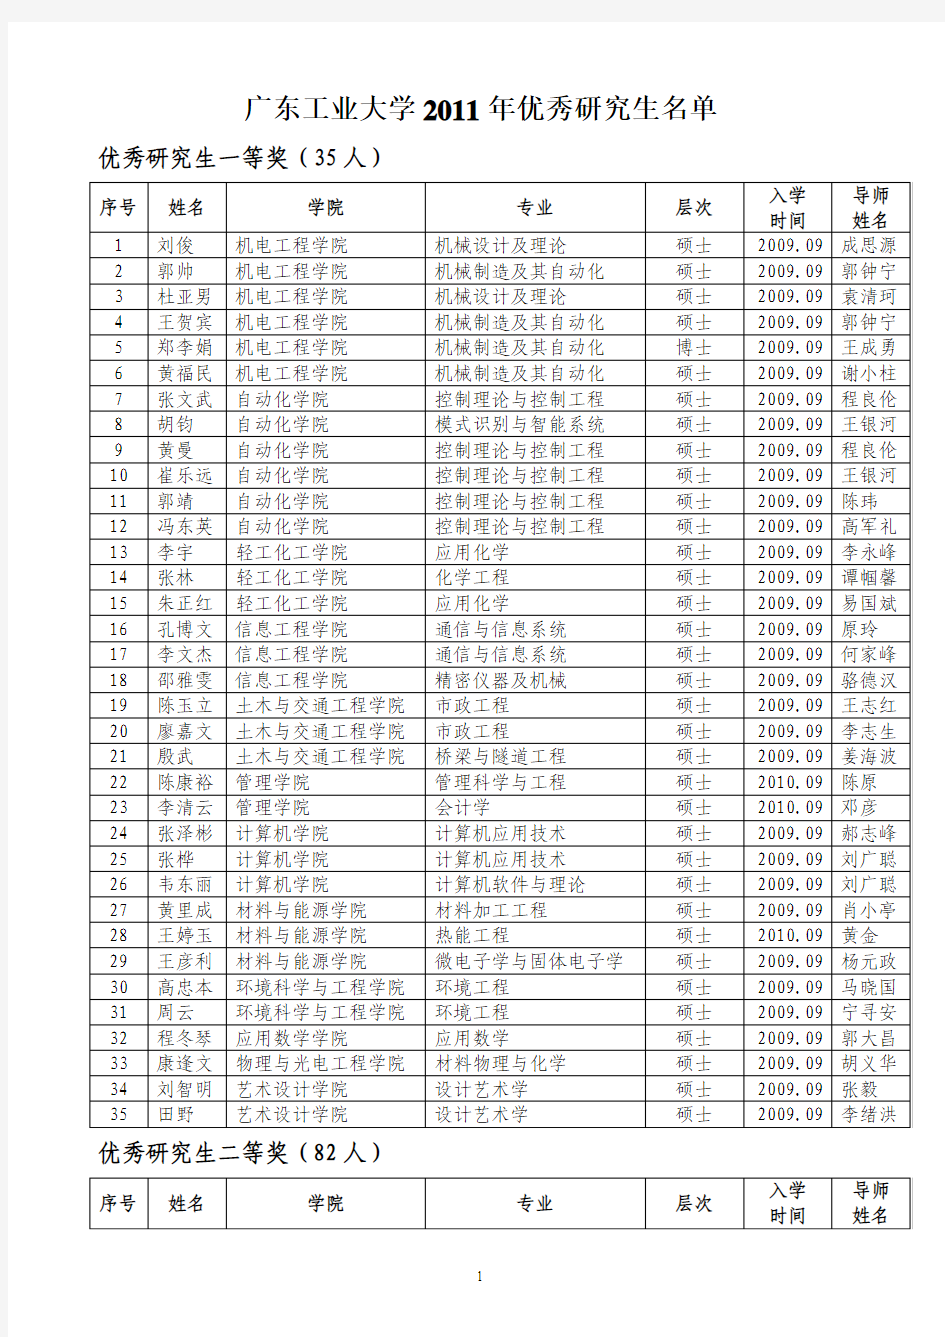 1广东工业大学2011年优秀研究生名单